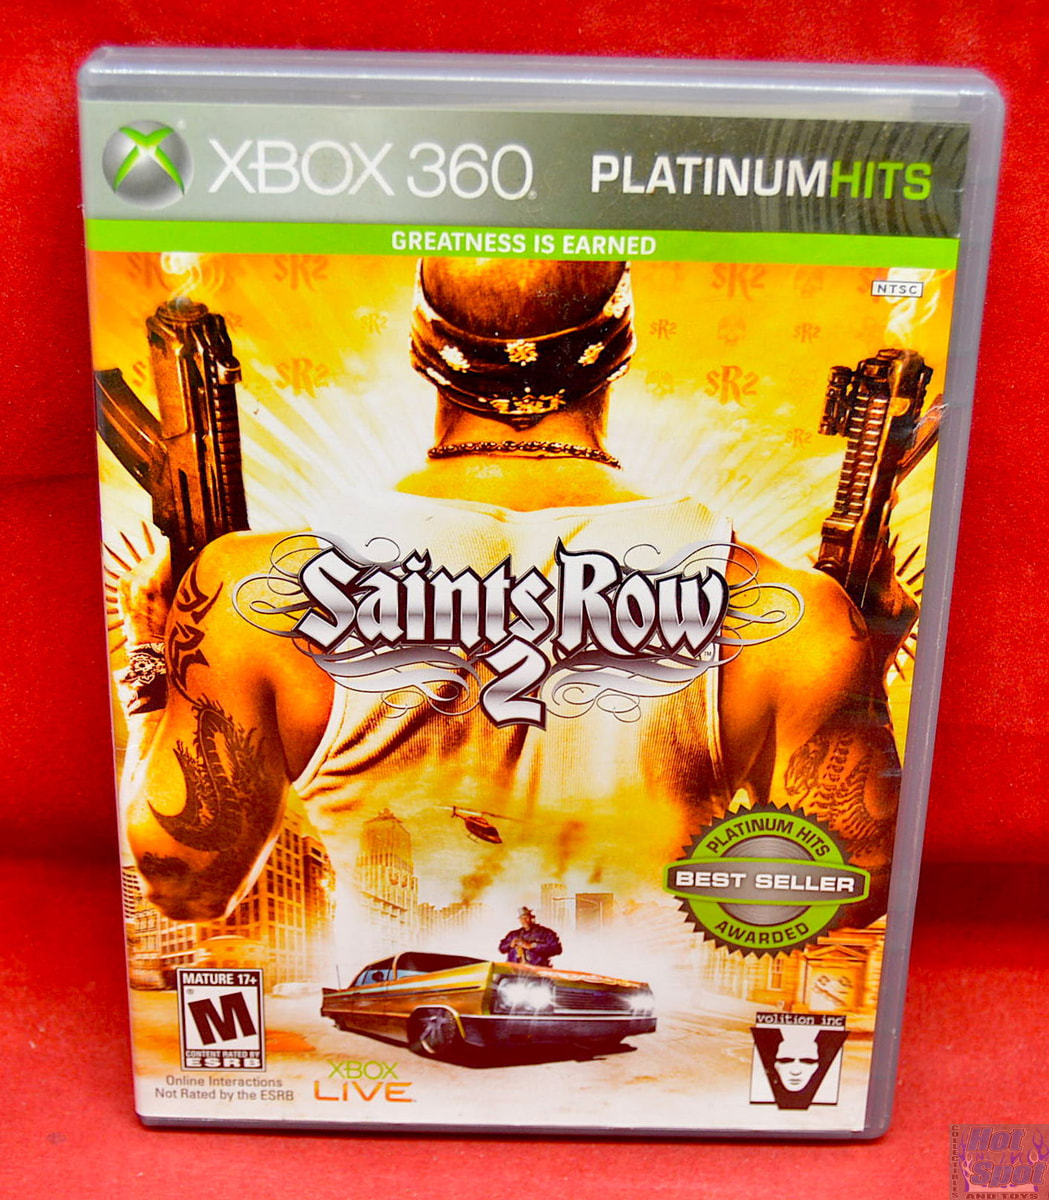 Saints Row 2 Review